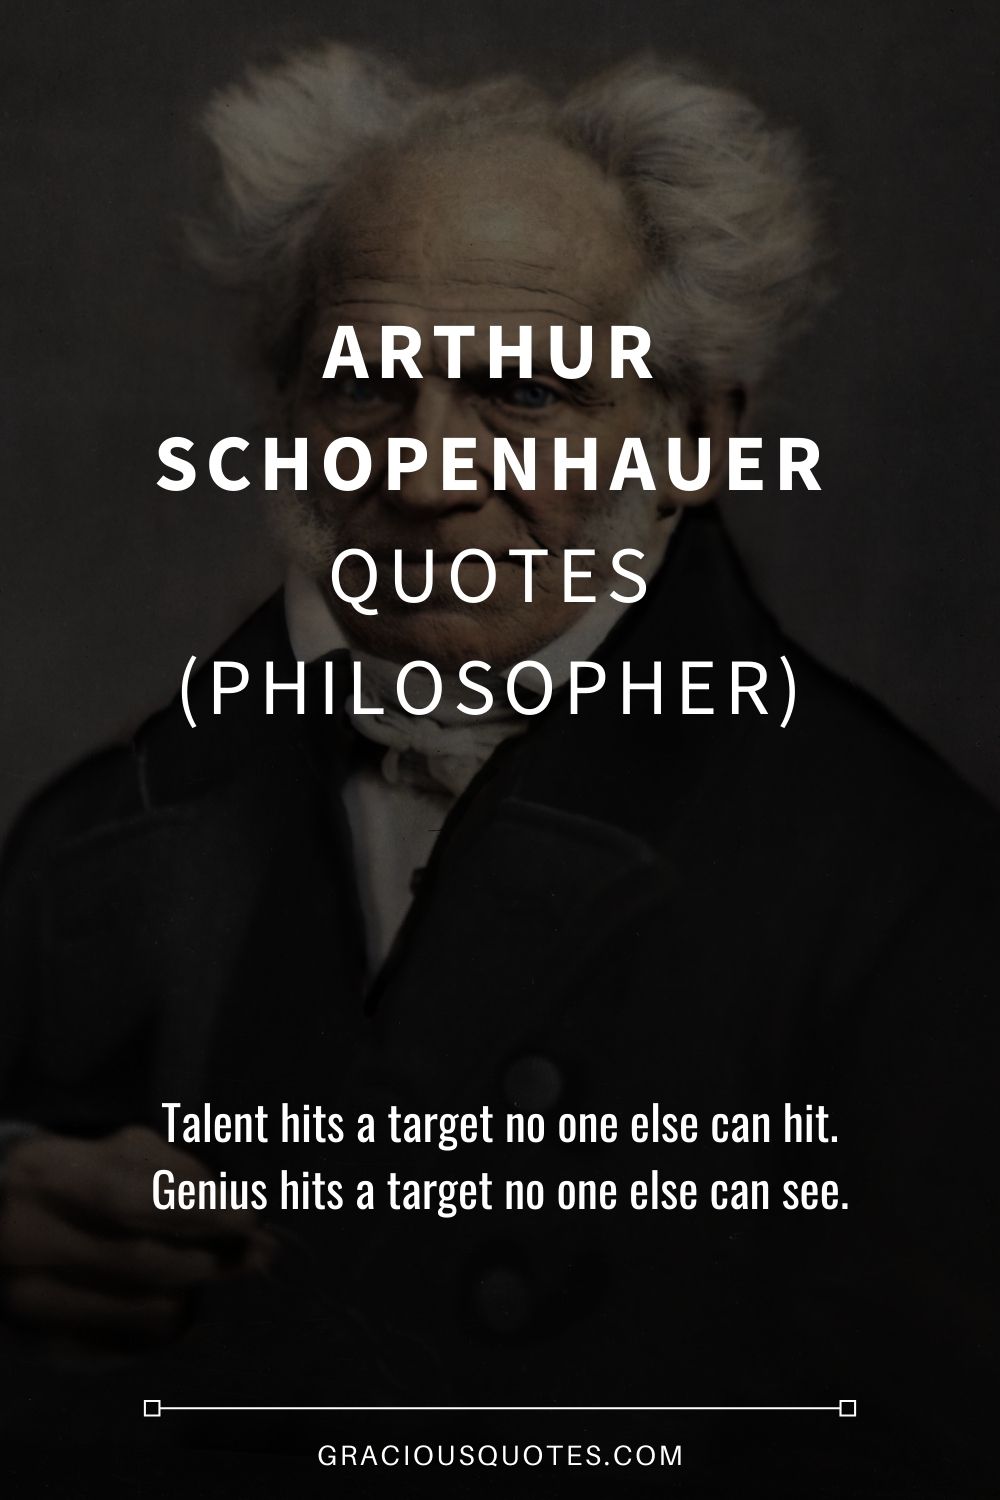 Arthur Schopenhauer Quotes (PHILOSOPHER) - Gracious Quotes